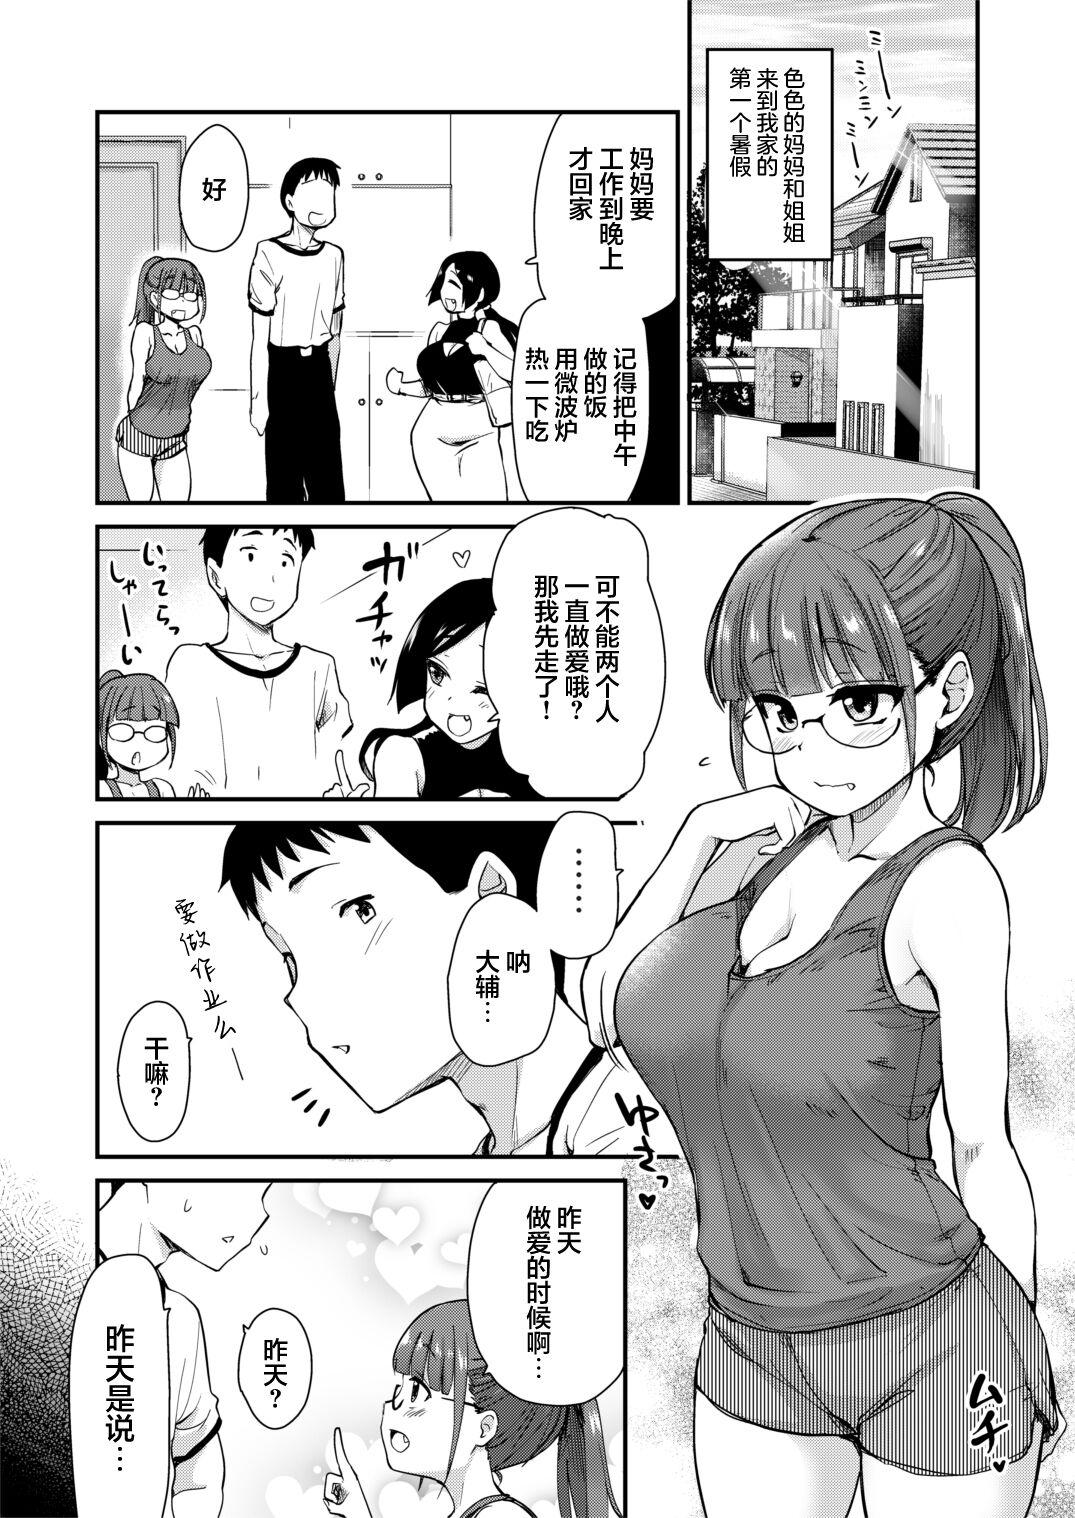 Titties Ane no Seiyoku Shori wa Ototo ga Suru Monoda to, Gitei wa Omoi Hajimete Iru. - Original Casal - Page 2